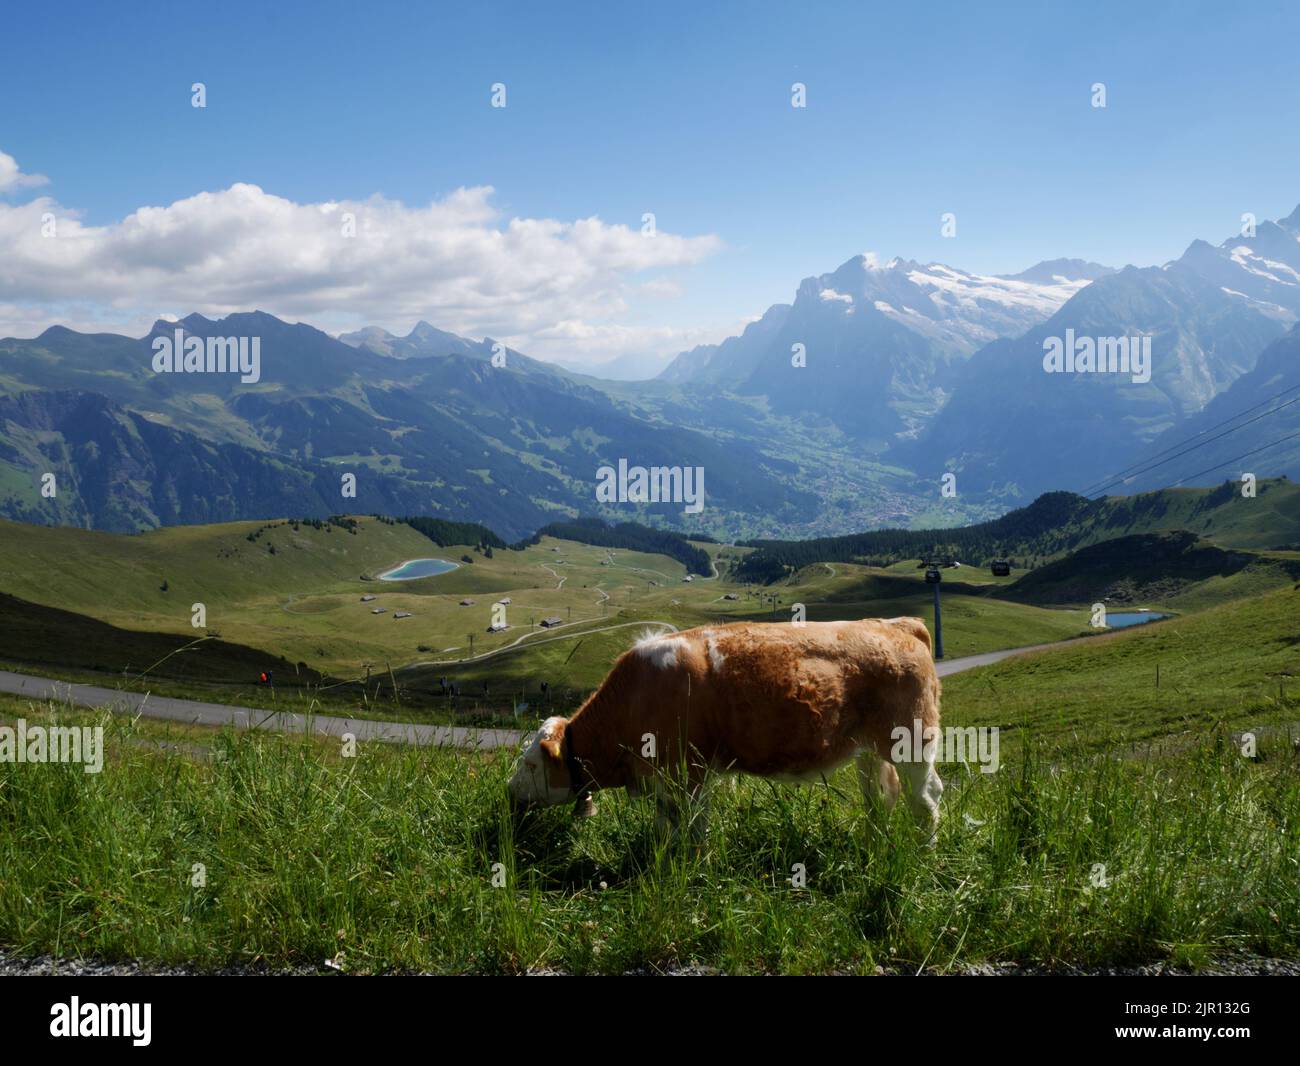 Cows grazing at Mannlichen, Wengen, Bernese Oberland, Switzerland. The village of Grindelwald lies in the distance. Stock Photo